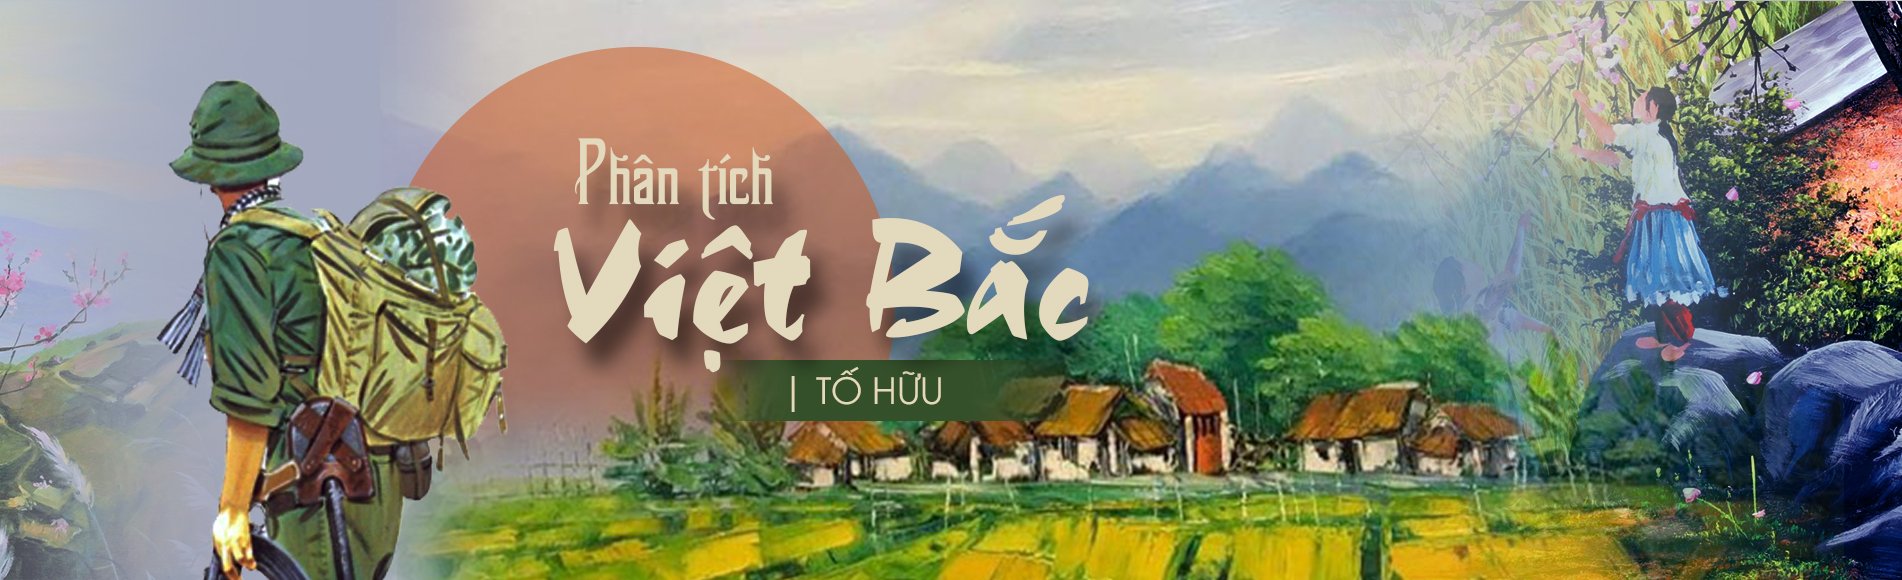 Tố Hữu: Khám phá tác phẩm của Tố Hữu, một trong những nhà thơ vĩ đại nhất của Việt Nam, với những thi ca tràn đầy cảm xúc và sức sống. Qua những tác phẩm của ông, chúng ta có thể tìm hiểu sâu hơn về tình yêu đất nước, con người và cuộc sống.